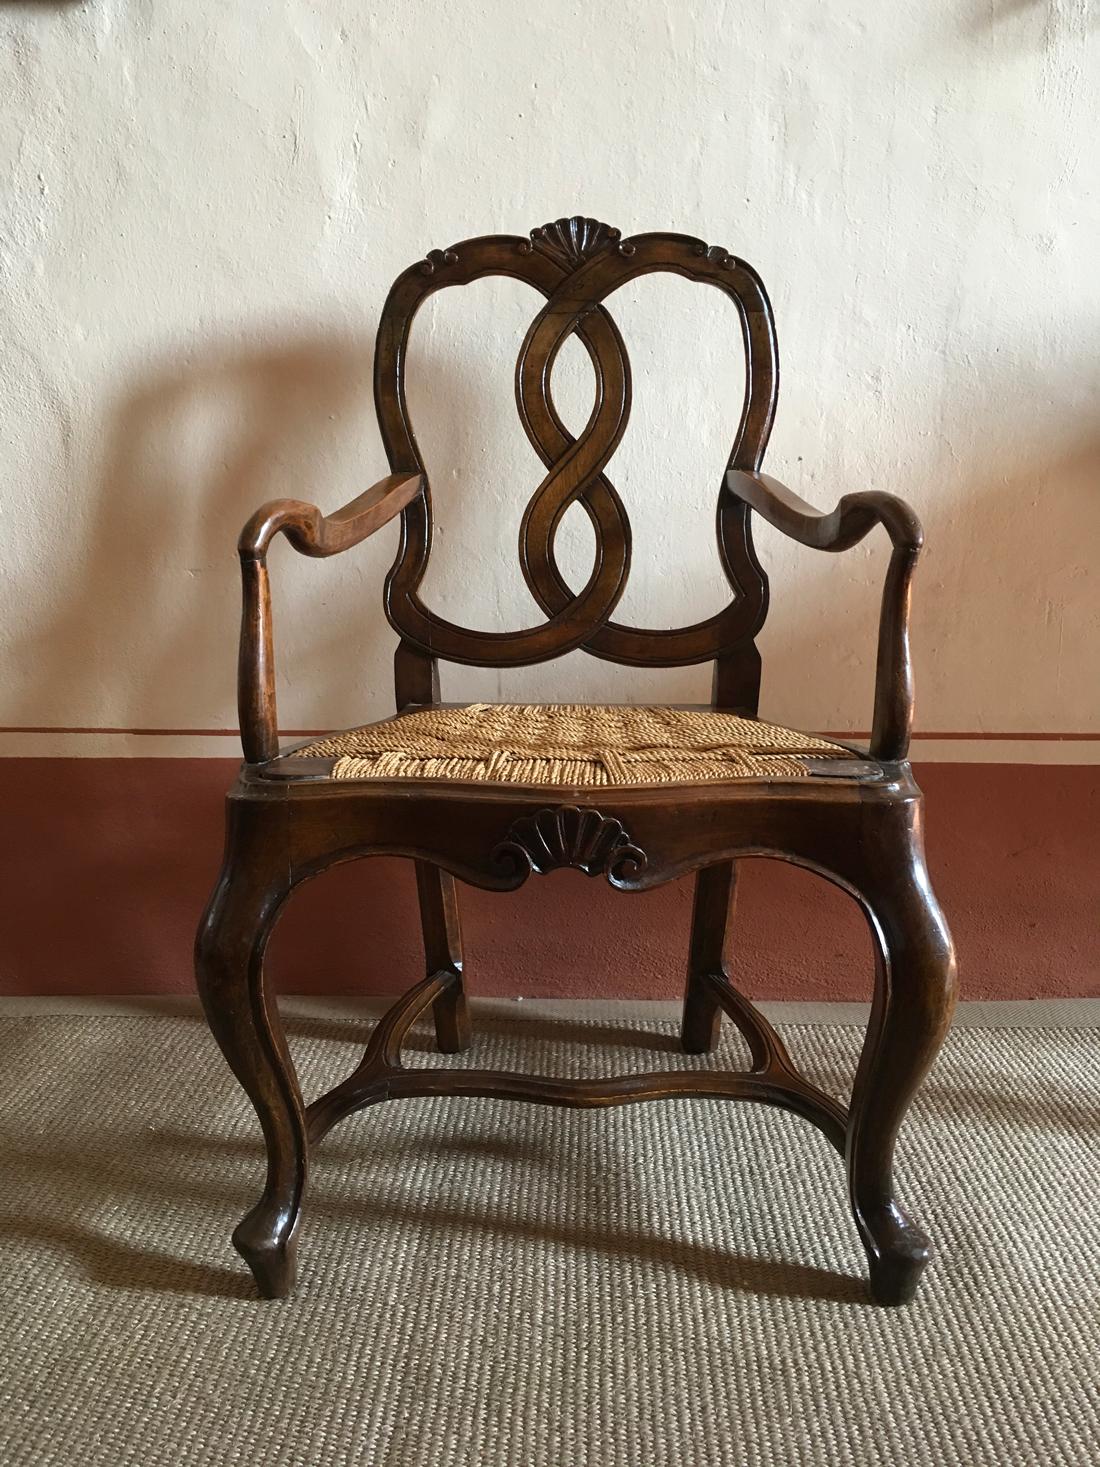 Mitte des 18. Jahrhunderts  Barocker handgeschnitzter Sessel aus venezianischem Nussbaum von 1750.
Strohsitz nicht original.
Das 18. Jahrhundert war in Venedig das Goldene Zeitalter und dieser Sessel ist ein bemerkenswertes Werk der venezianischen